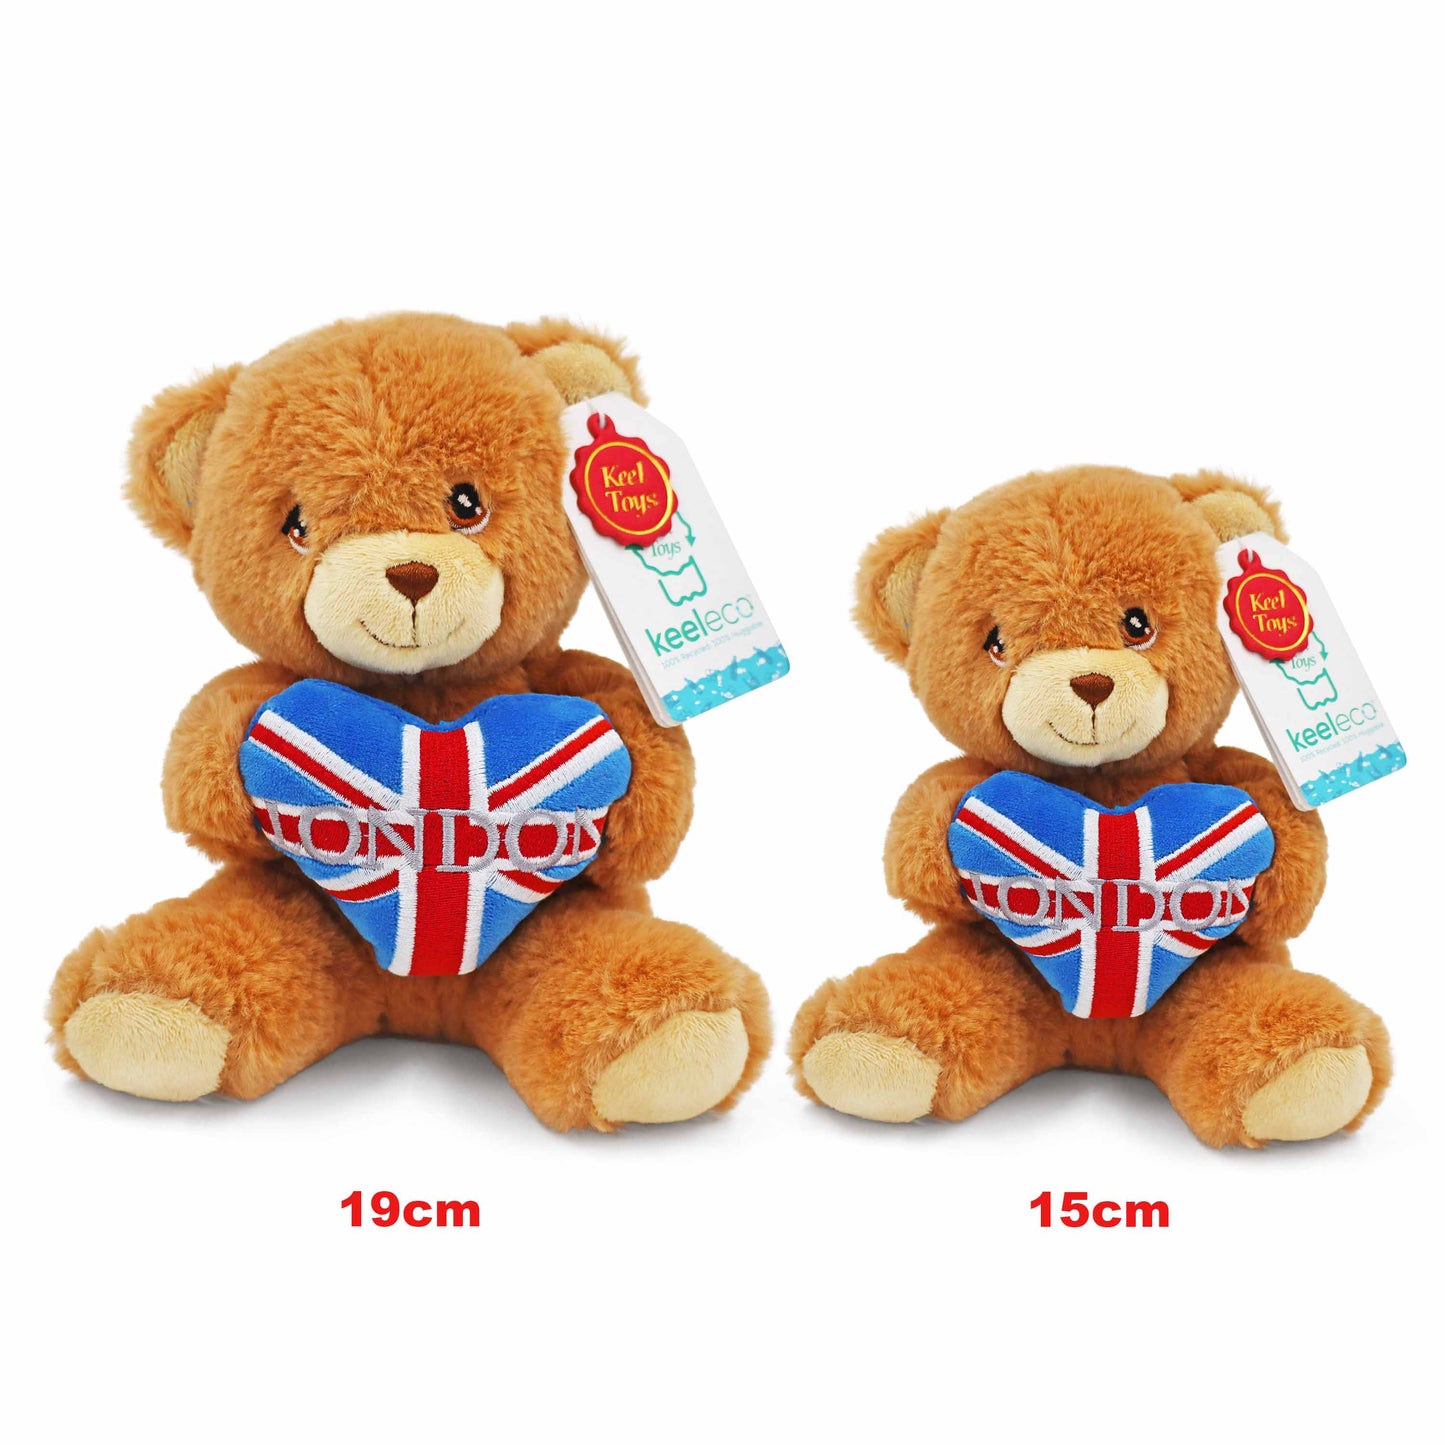 Union Jack London Heart Teddy Bear - Souvenir Teddy Bear